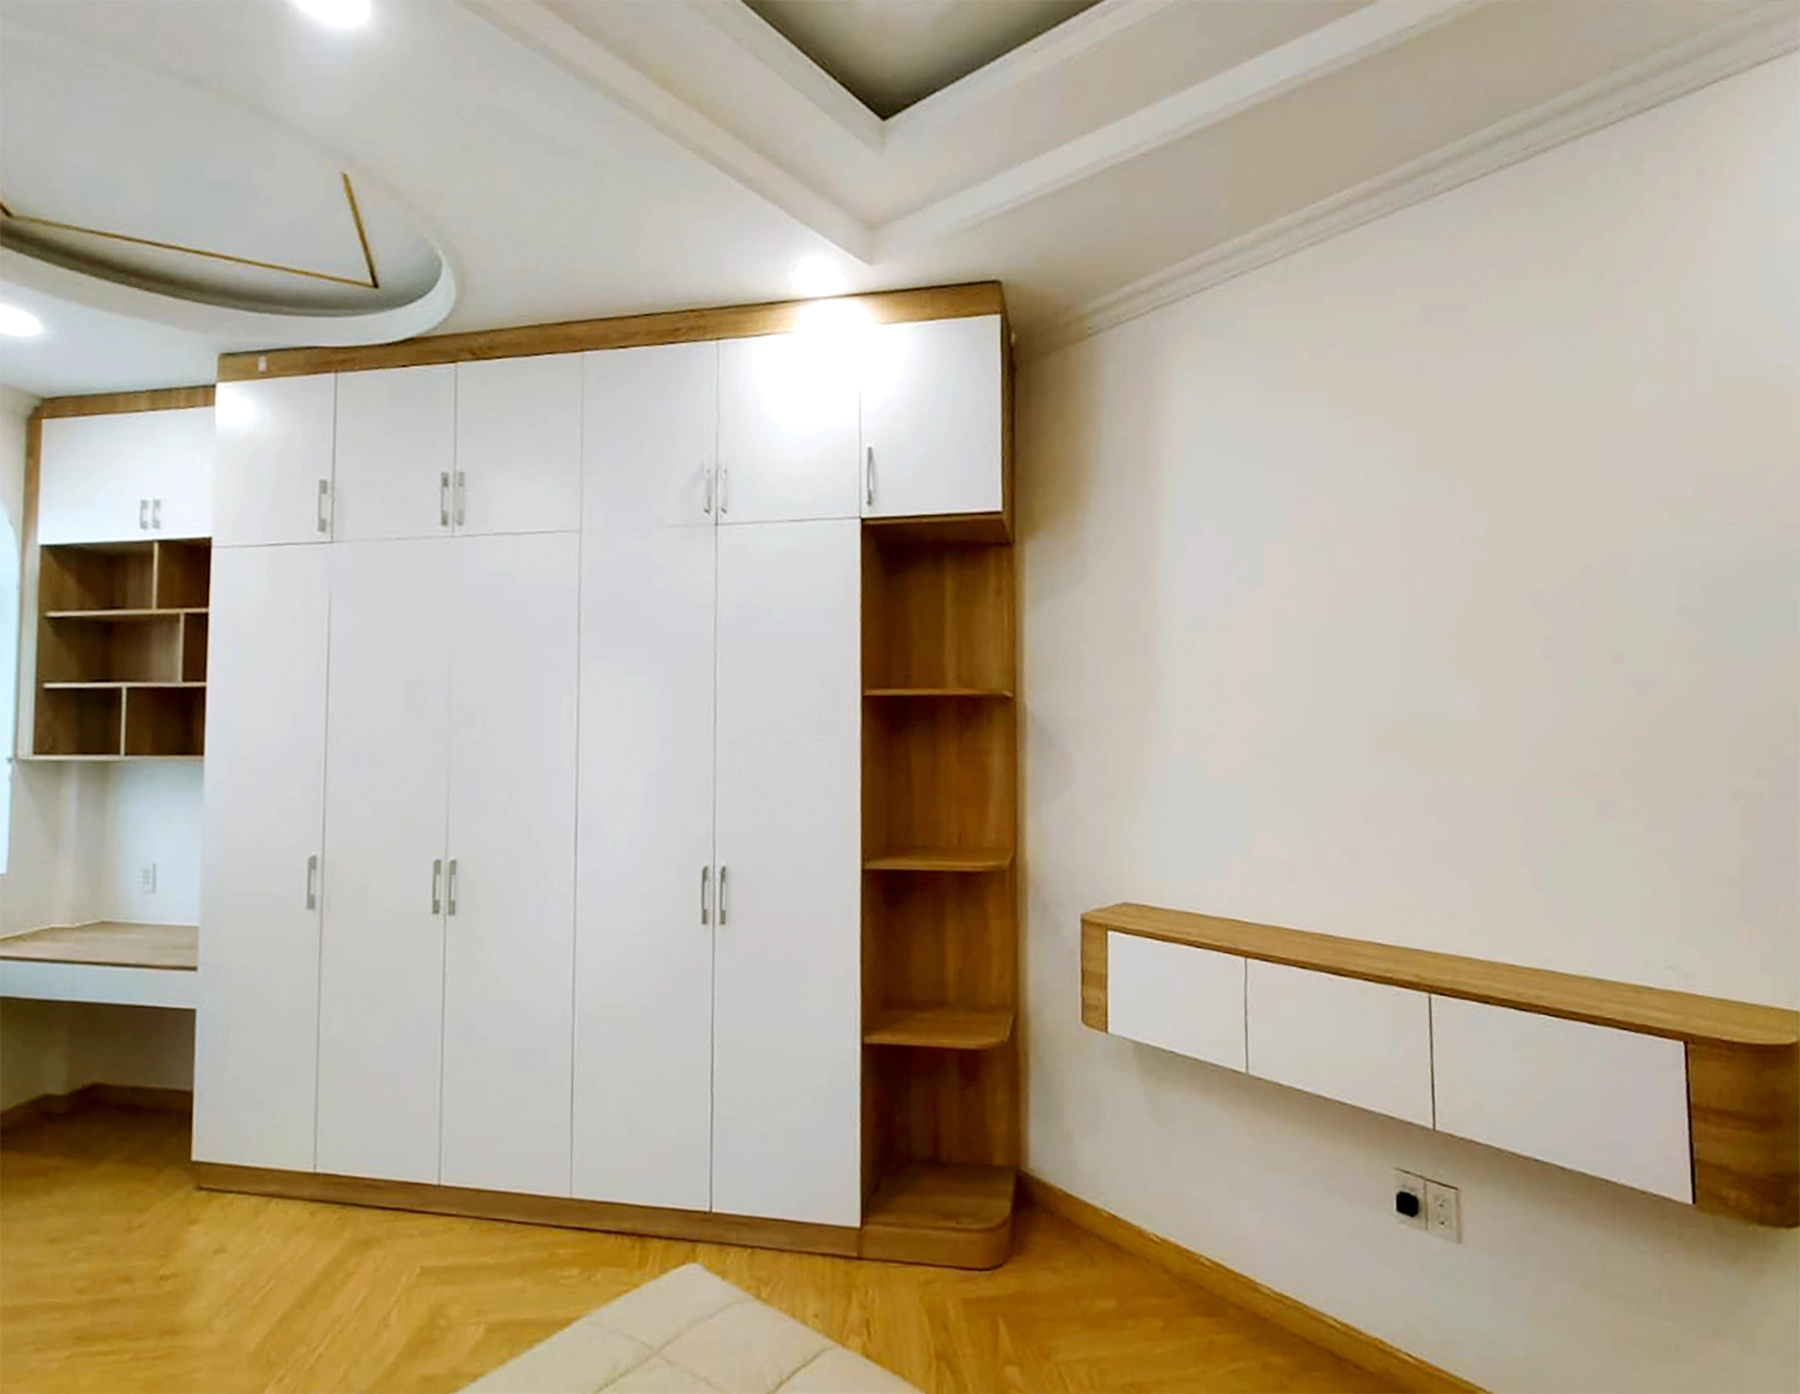 Hoàn thiện nội thất phòng ngủ nhà phố 100m2 tại Bình Dương phong cách Hiện đại Modern